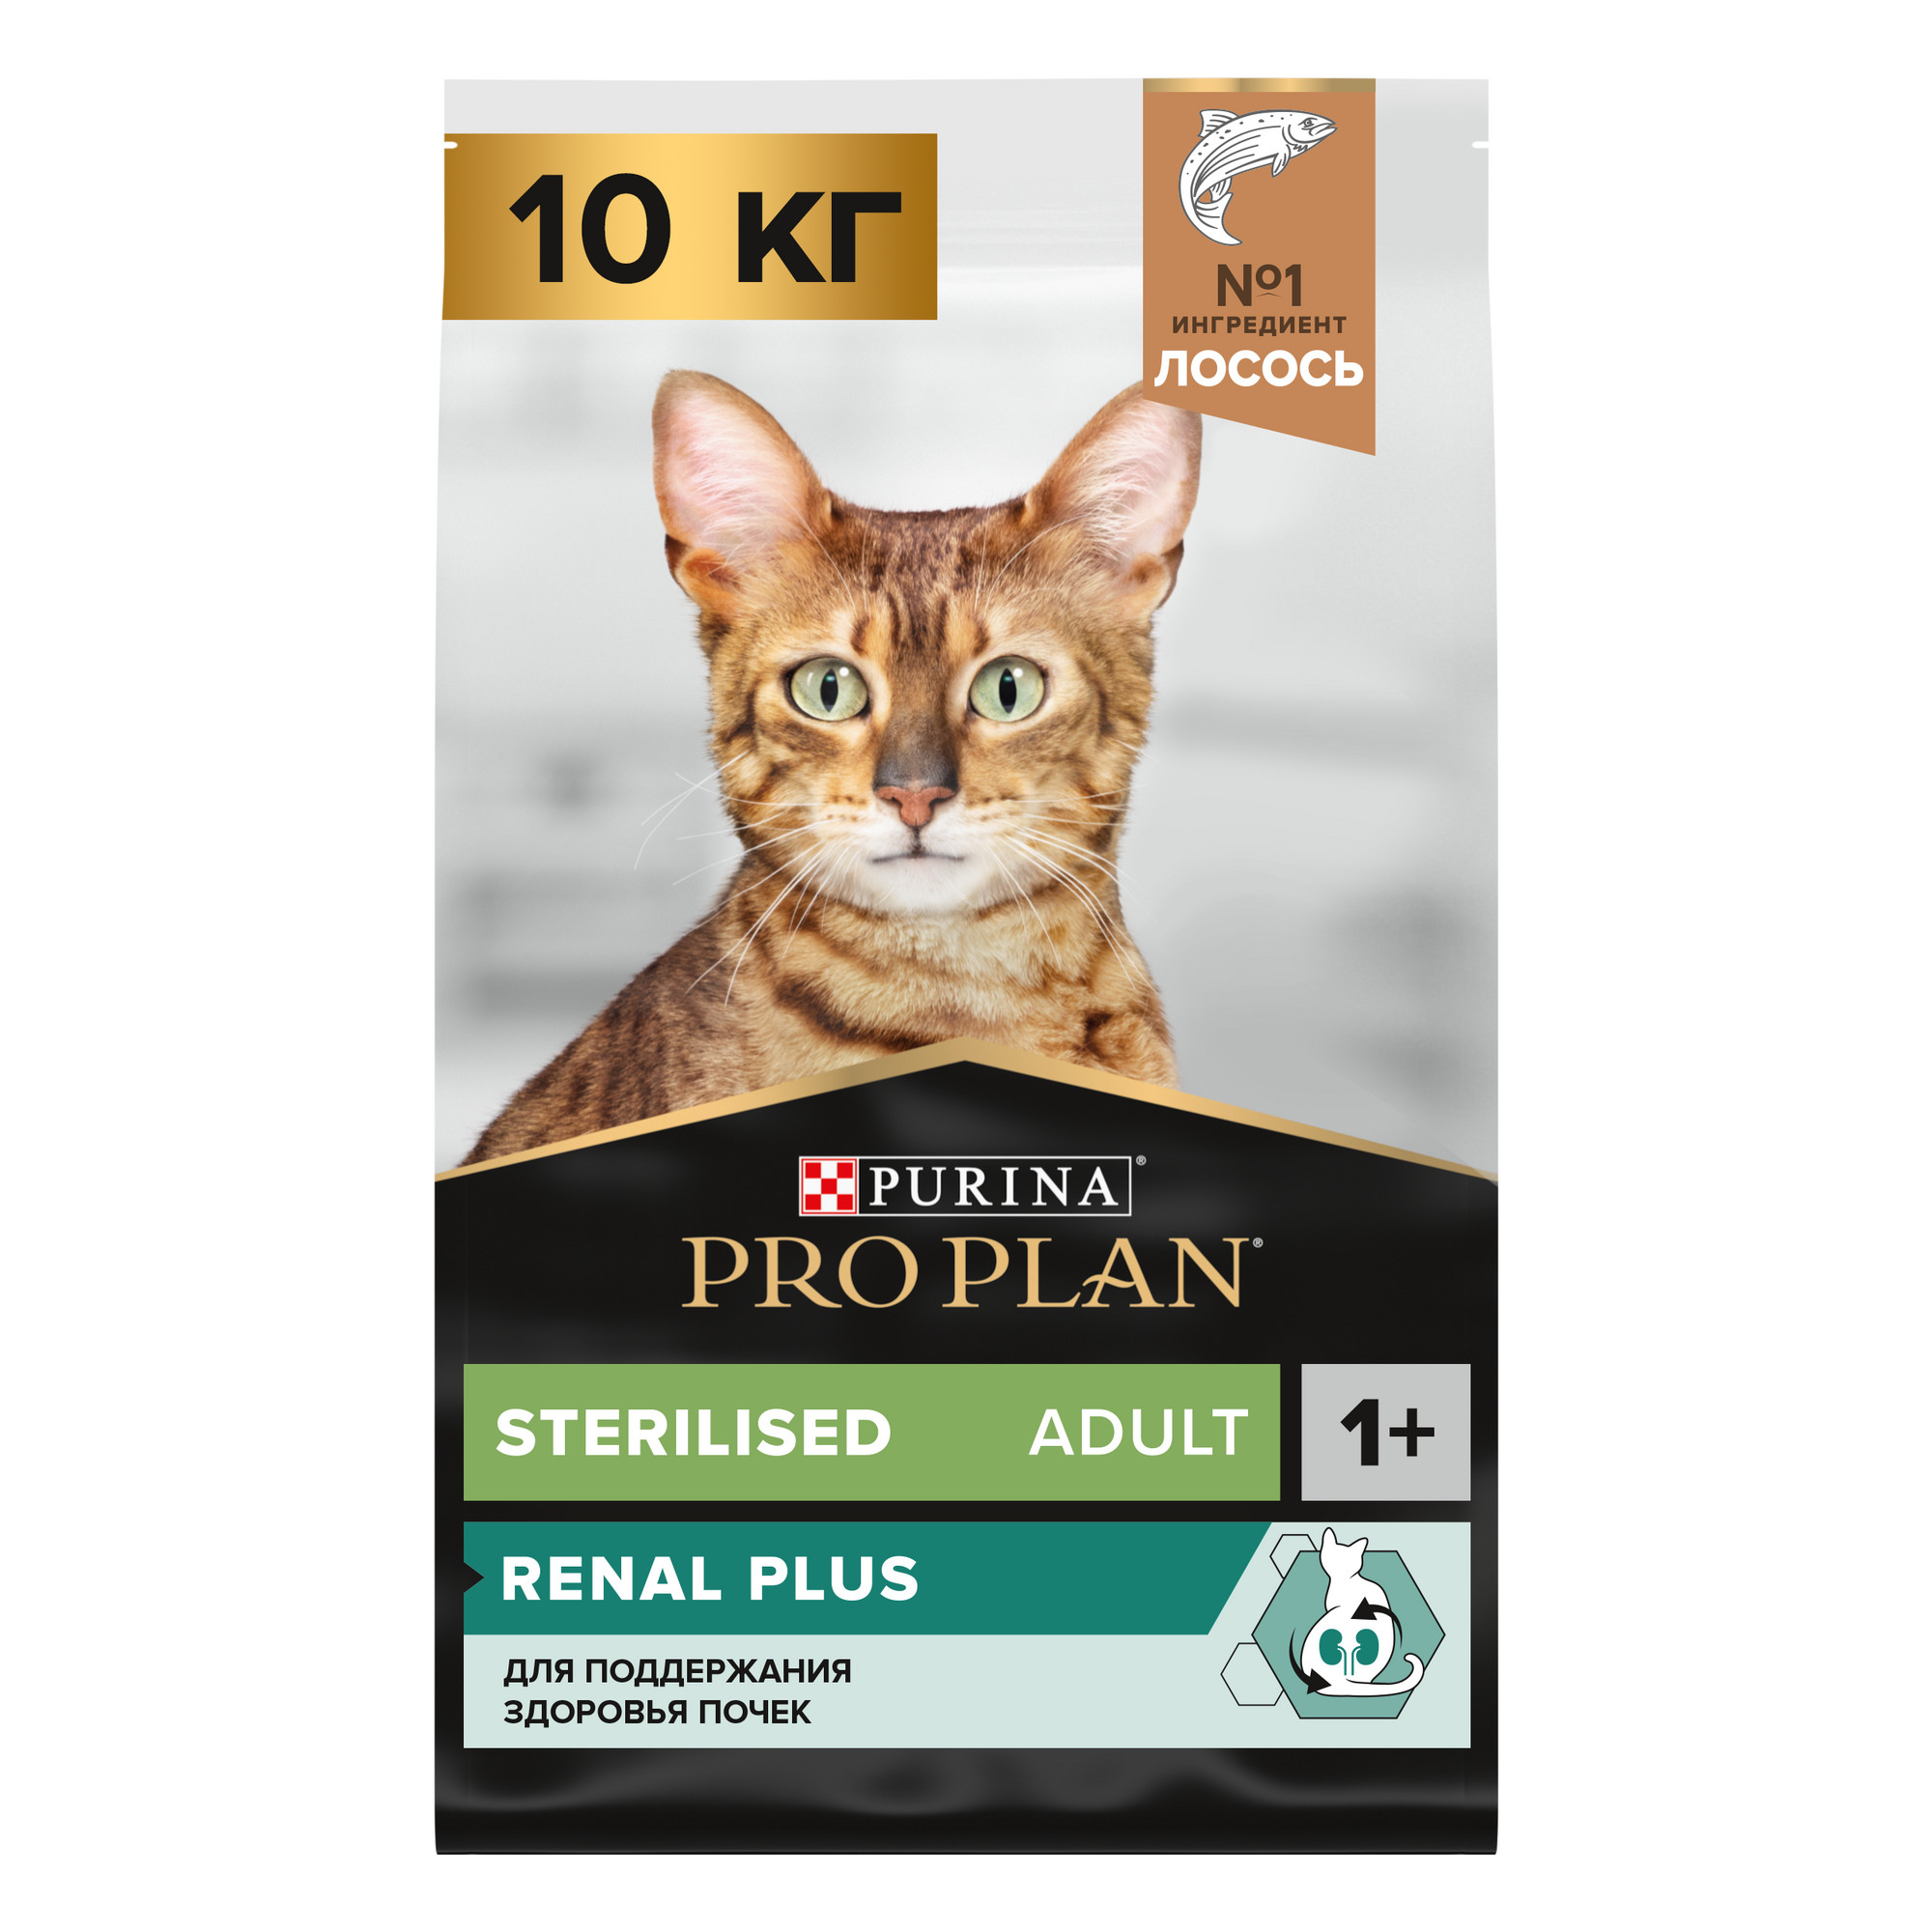 Сухой корм для кошек PRO PLAN для здоровья почек после стерилизации с лососем, 10 кг